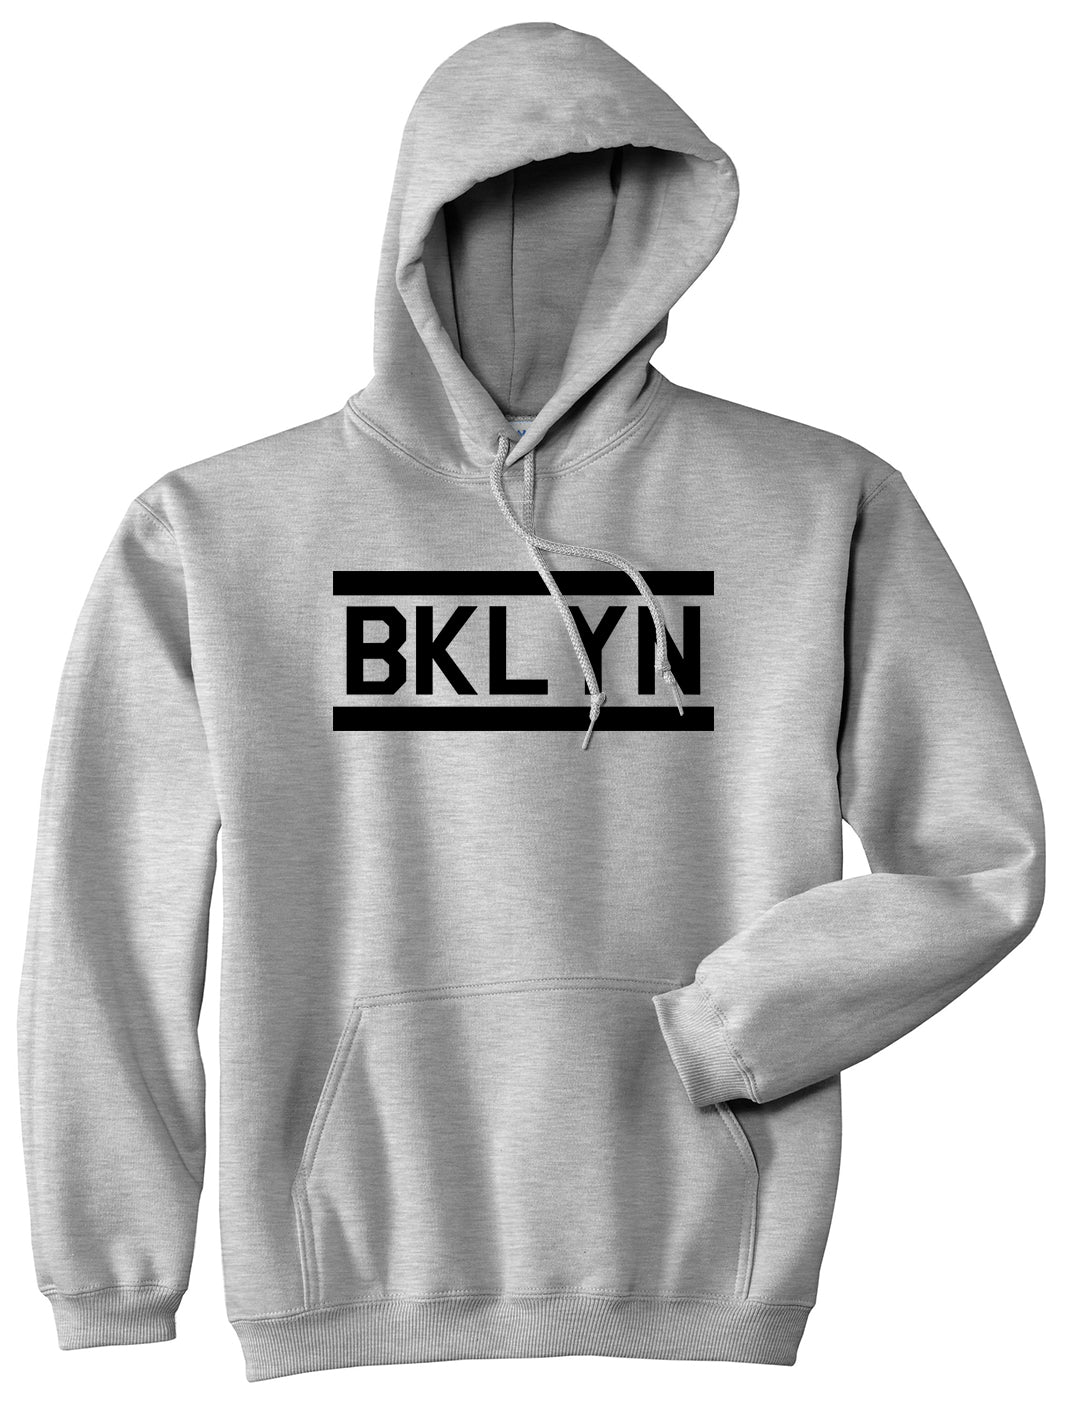 BKLYN Brooklyn Mens Pullover Hoodie Grey by Kings Of NY